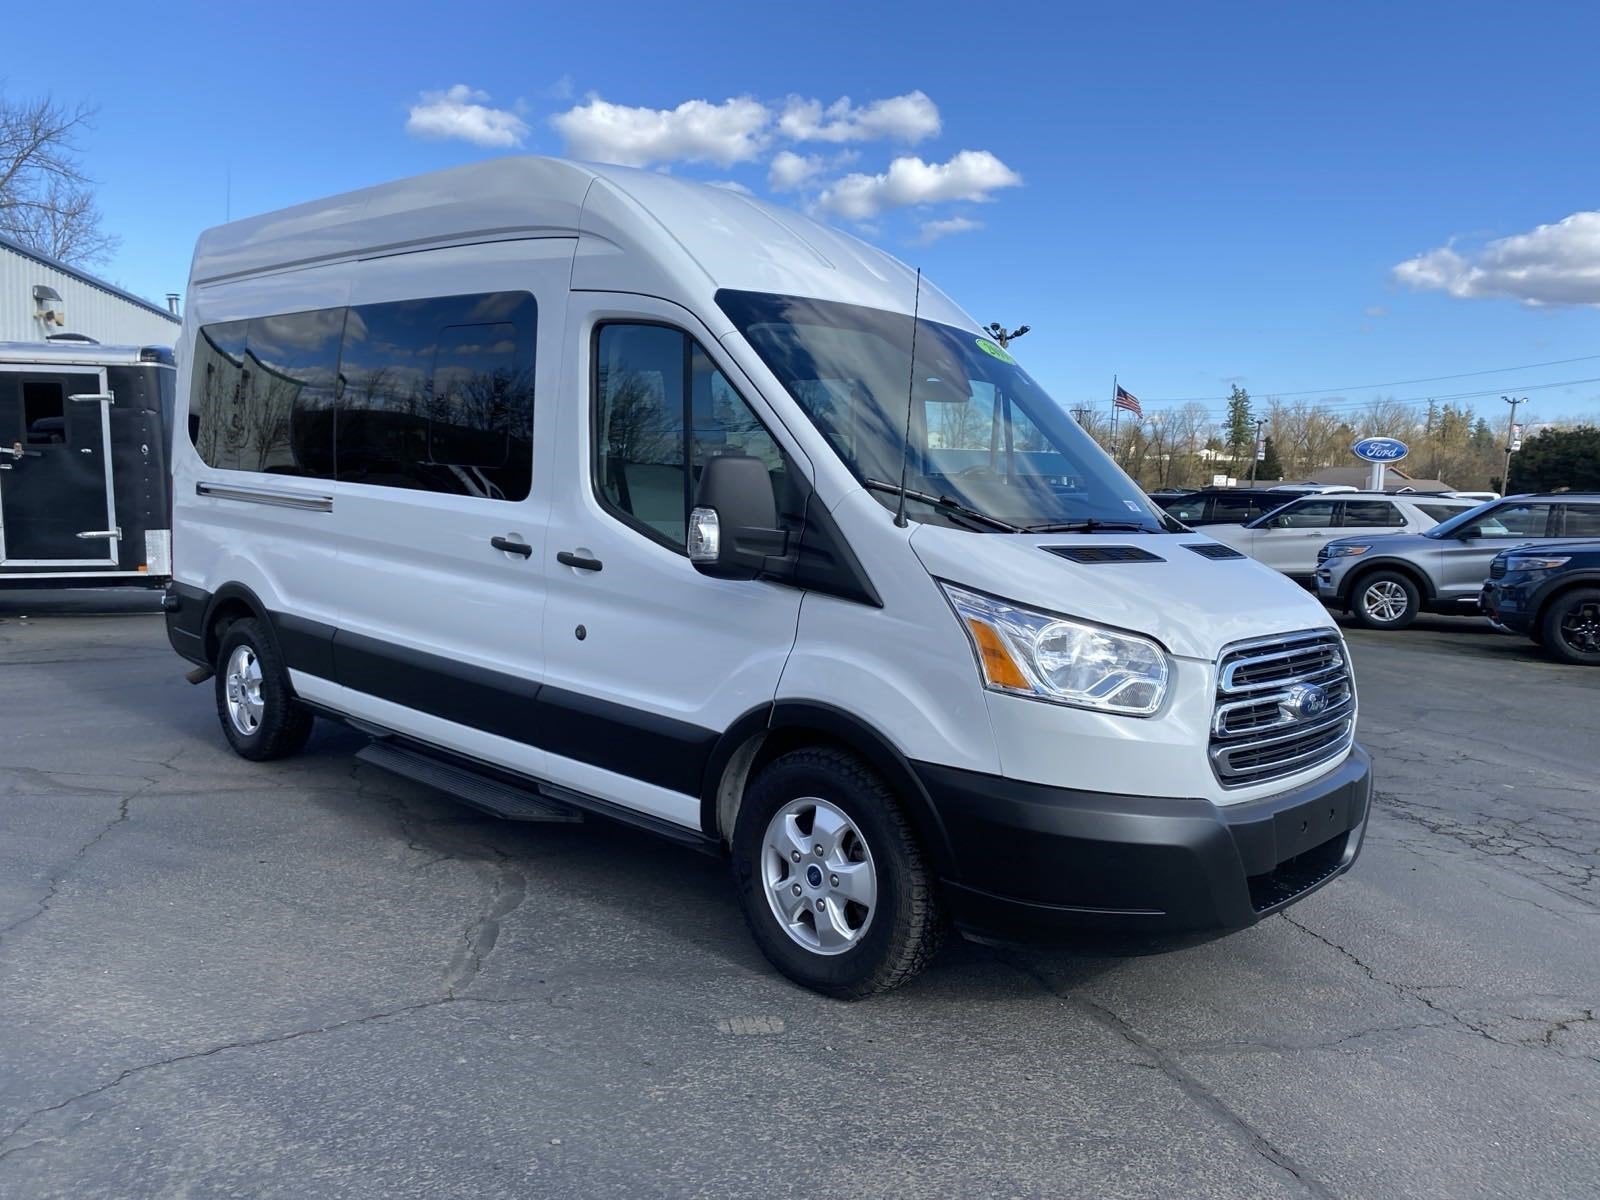 2019 Ford Transit Passenger Wagon Base